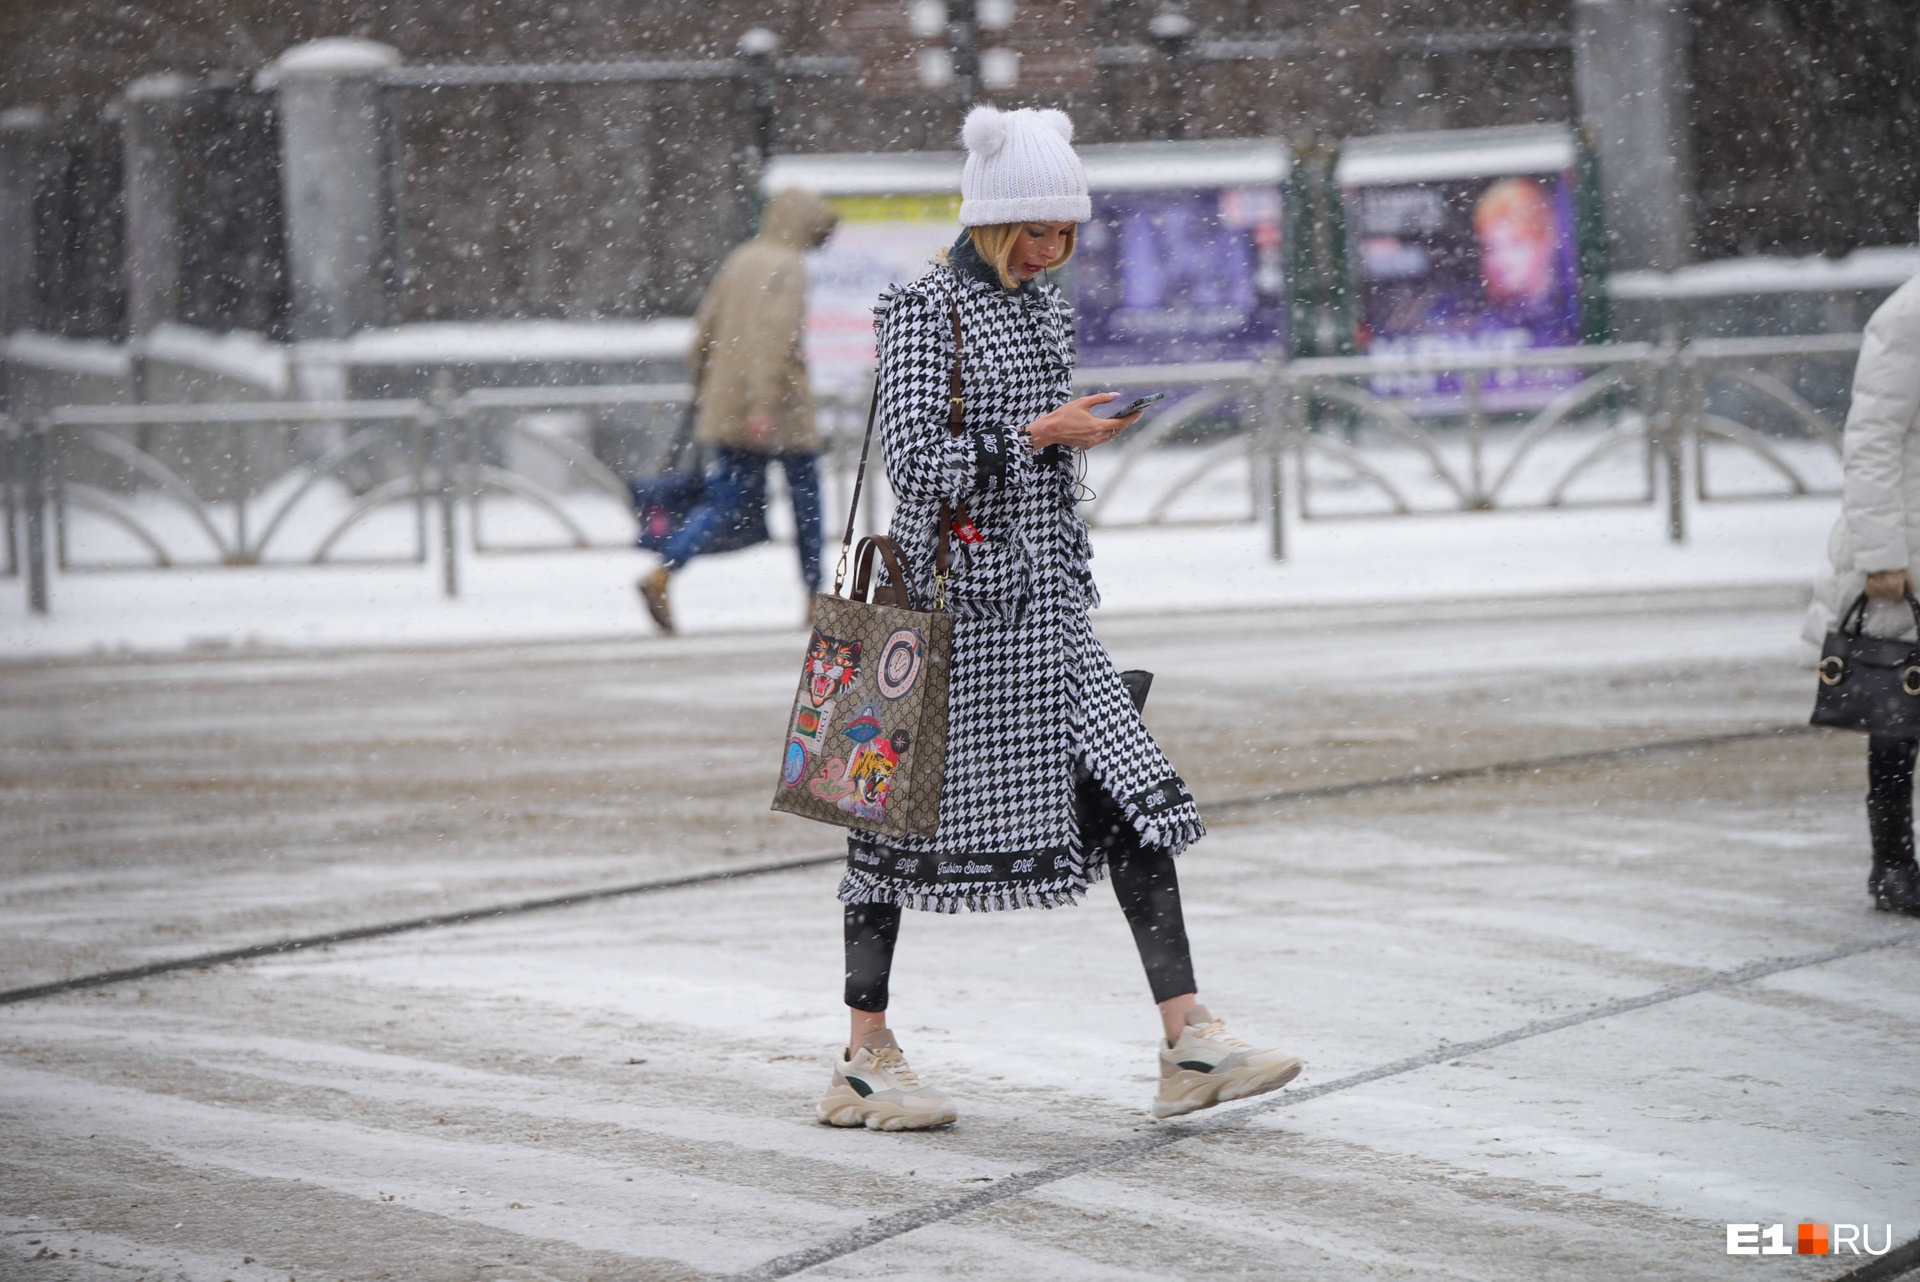 Останемся без снега к Новому году? Погода в Екатеринбурге на декабрь 2021-го